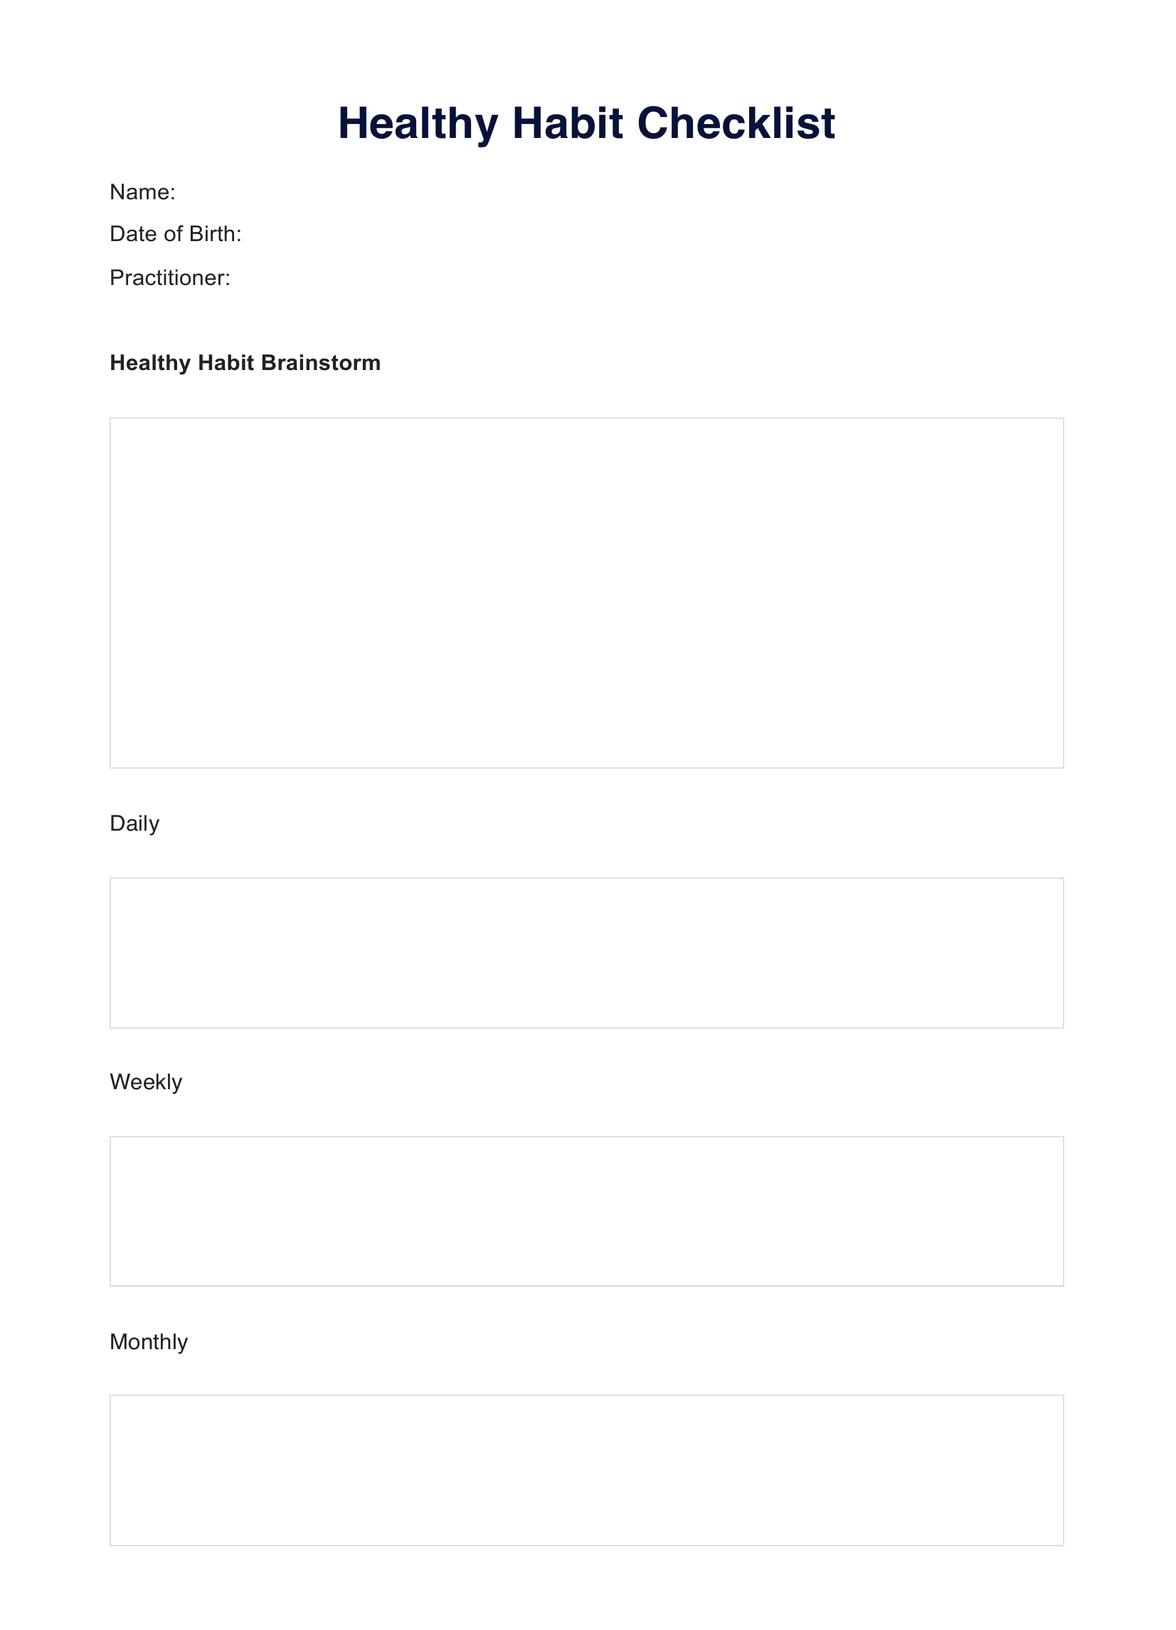 Healthy Habit Checklist PDF Example